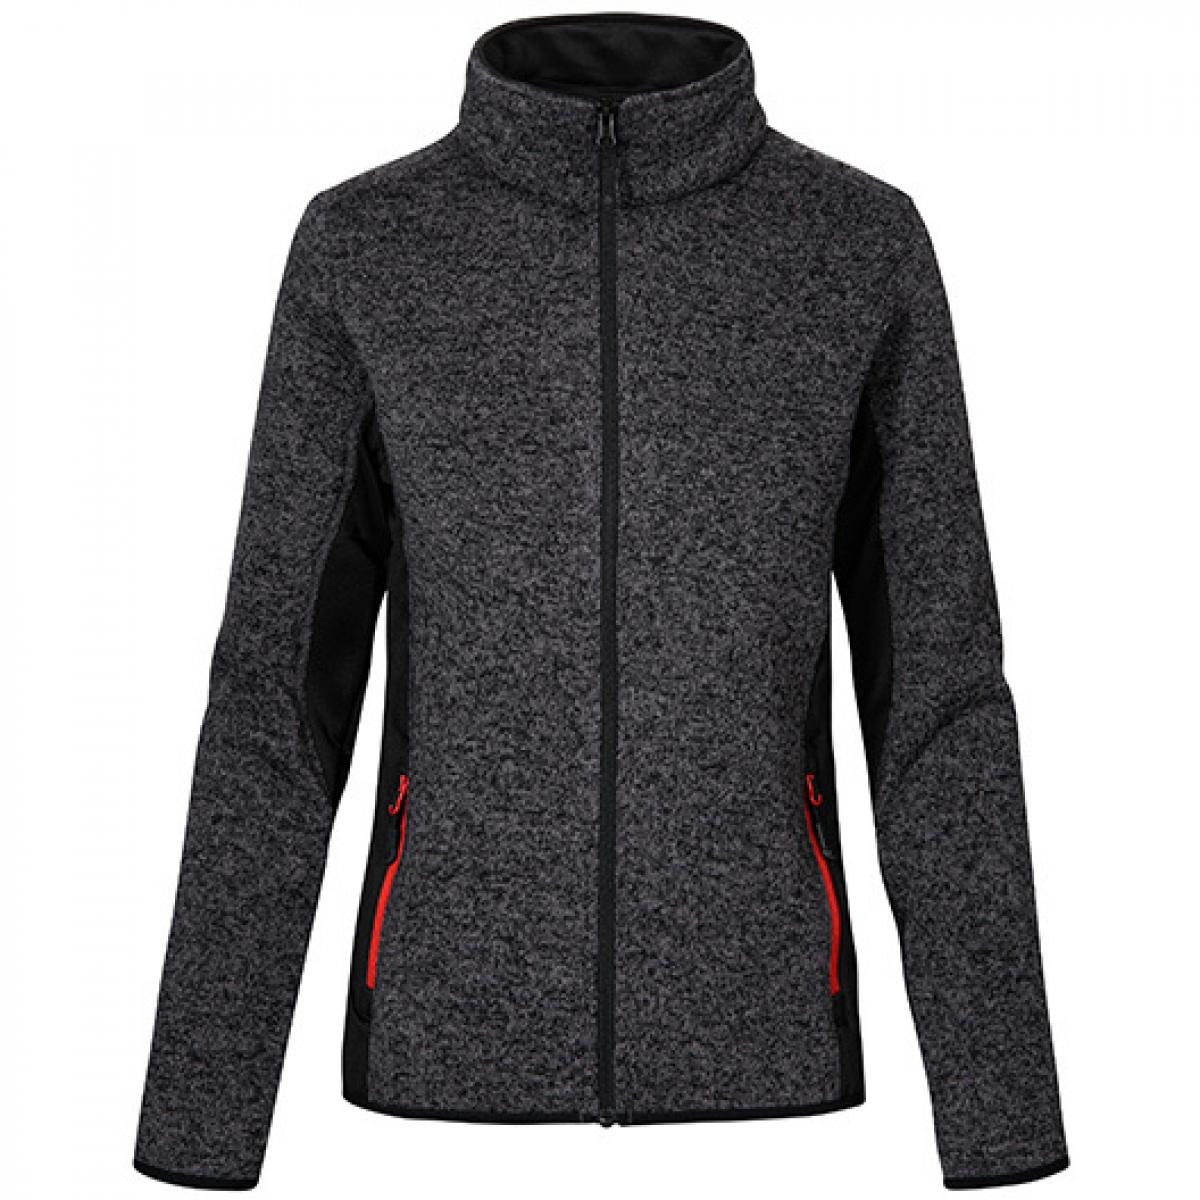 Hersteller: Promodoro Herstellernummer: 7705 Artikelbezeichnung: Damen Knit Jacket Workwear Farbe: Heather Graphite